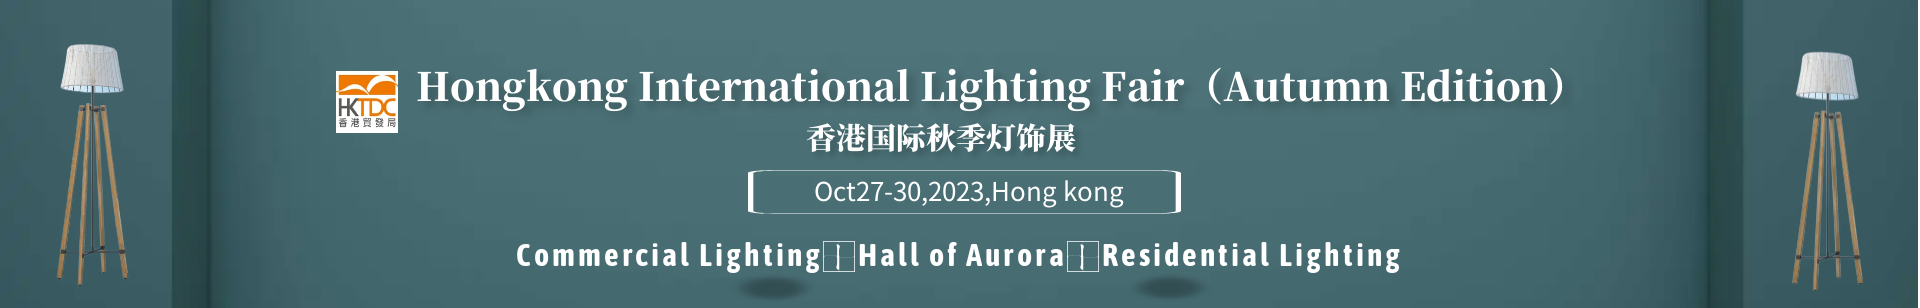 Hong Kong International Lighting Fair (Autumn Edition) 